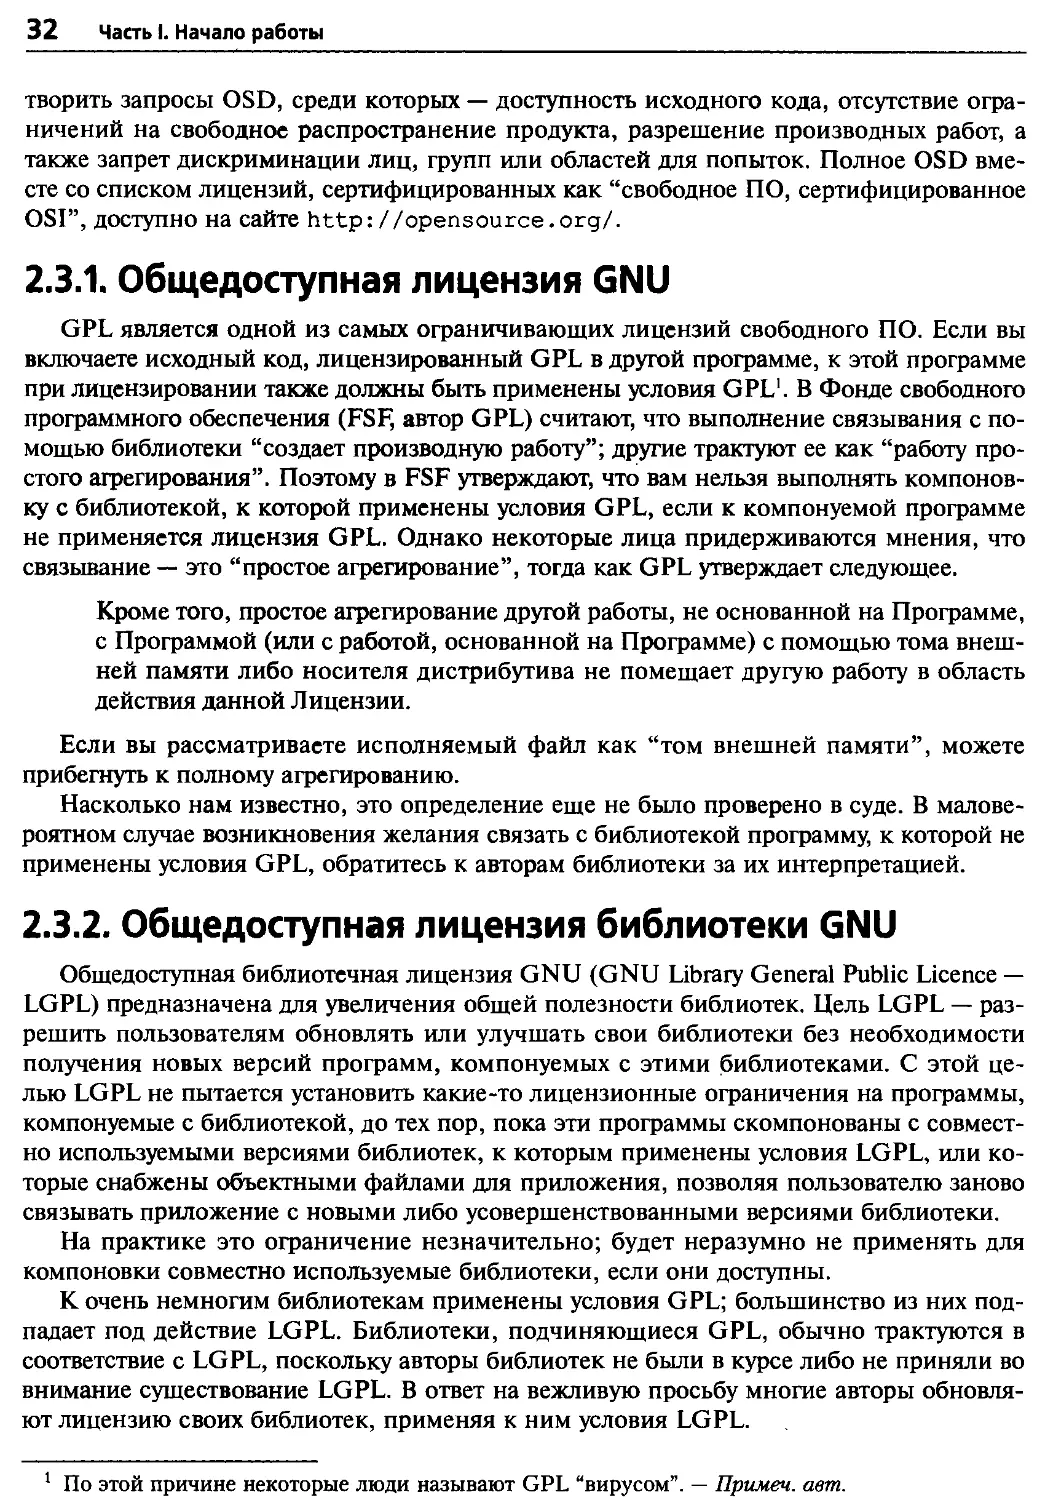 2.3.1. Общедоступная лицензия GNU
2.3.2. Общедоступная лицензия библиотеки GNU